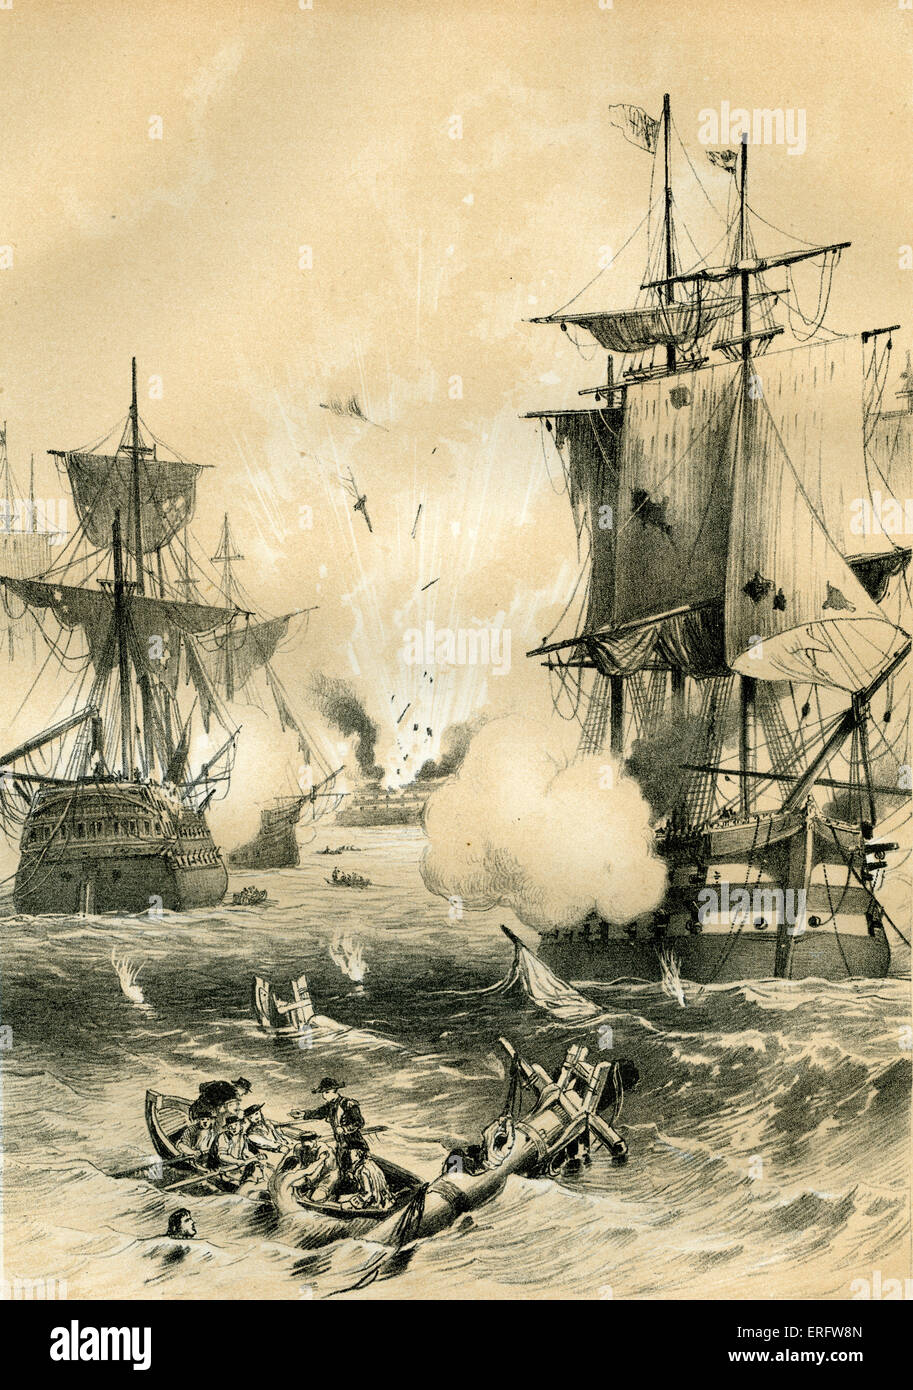 La bataille navale du Cap St Vincent, ou bataille de Cape Santa Maria, a eu lieu le 16 janvier 1780 entre les Espagnols et les Banque D'Images